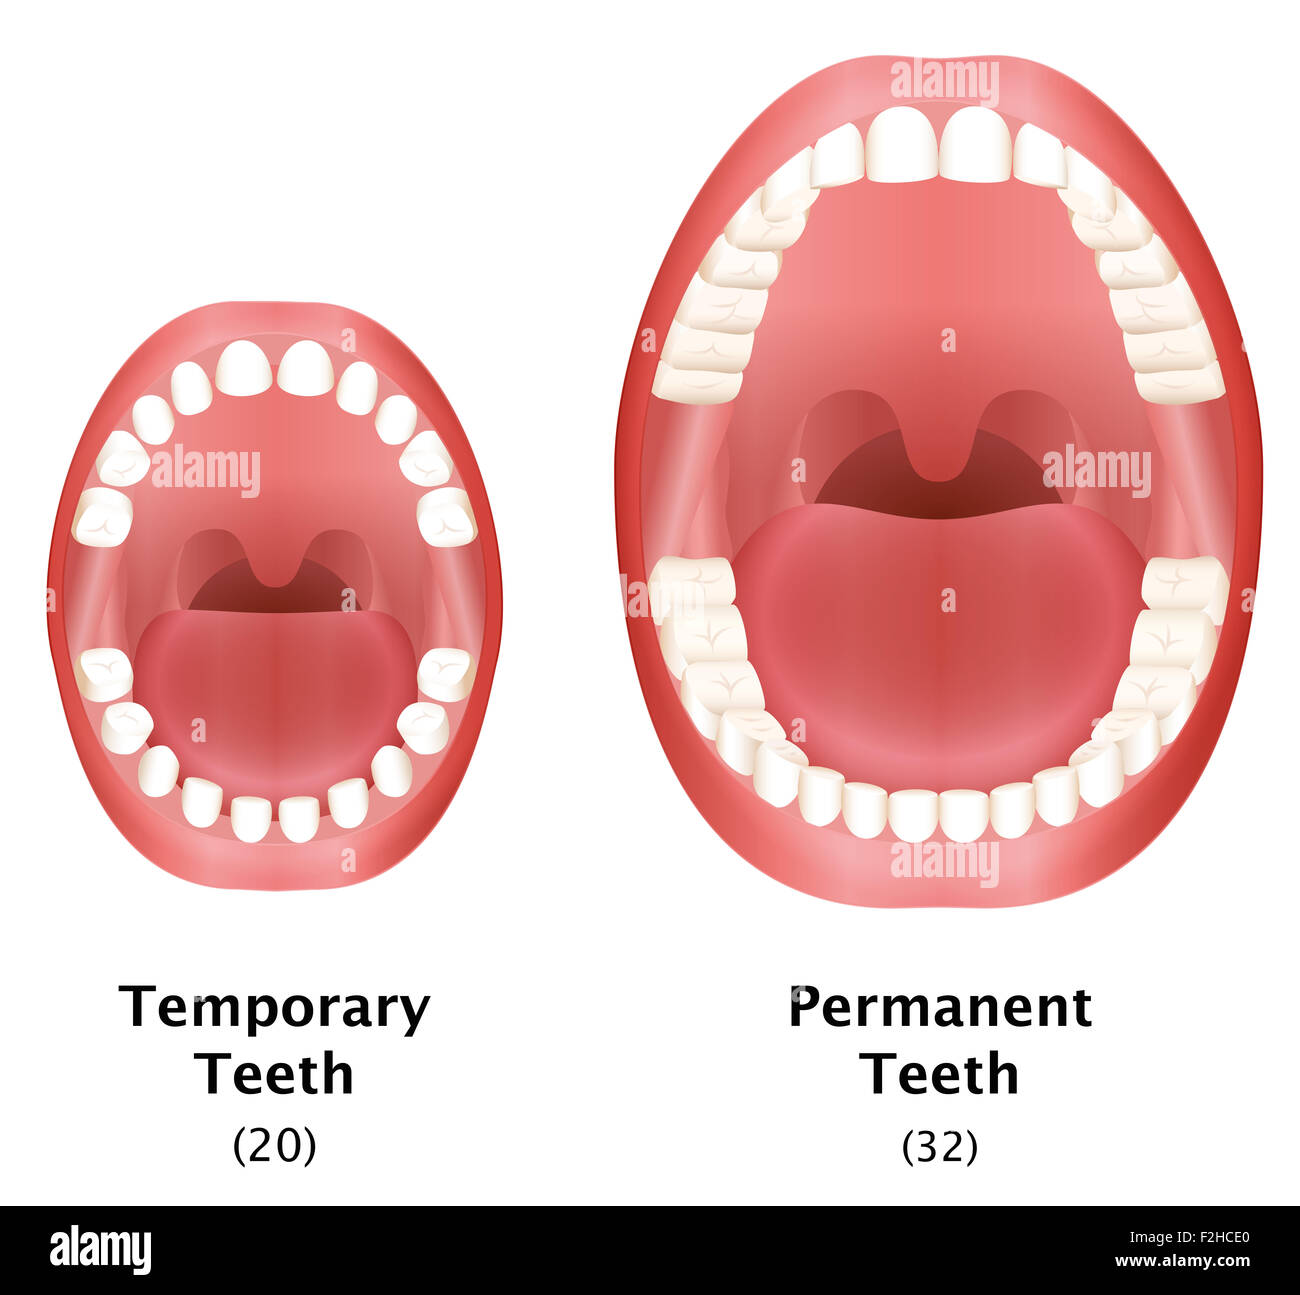 Comparaison des dents temporaires d'un enfant et les dents permanentes d'un adulte la dentition naturelle. Banque D'Images